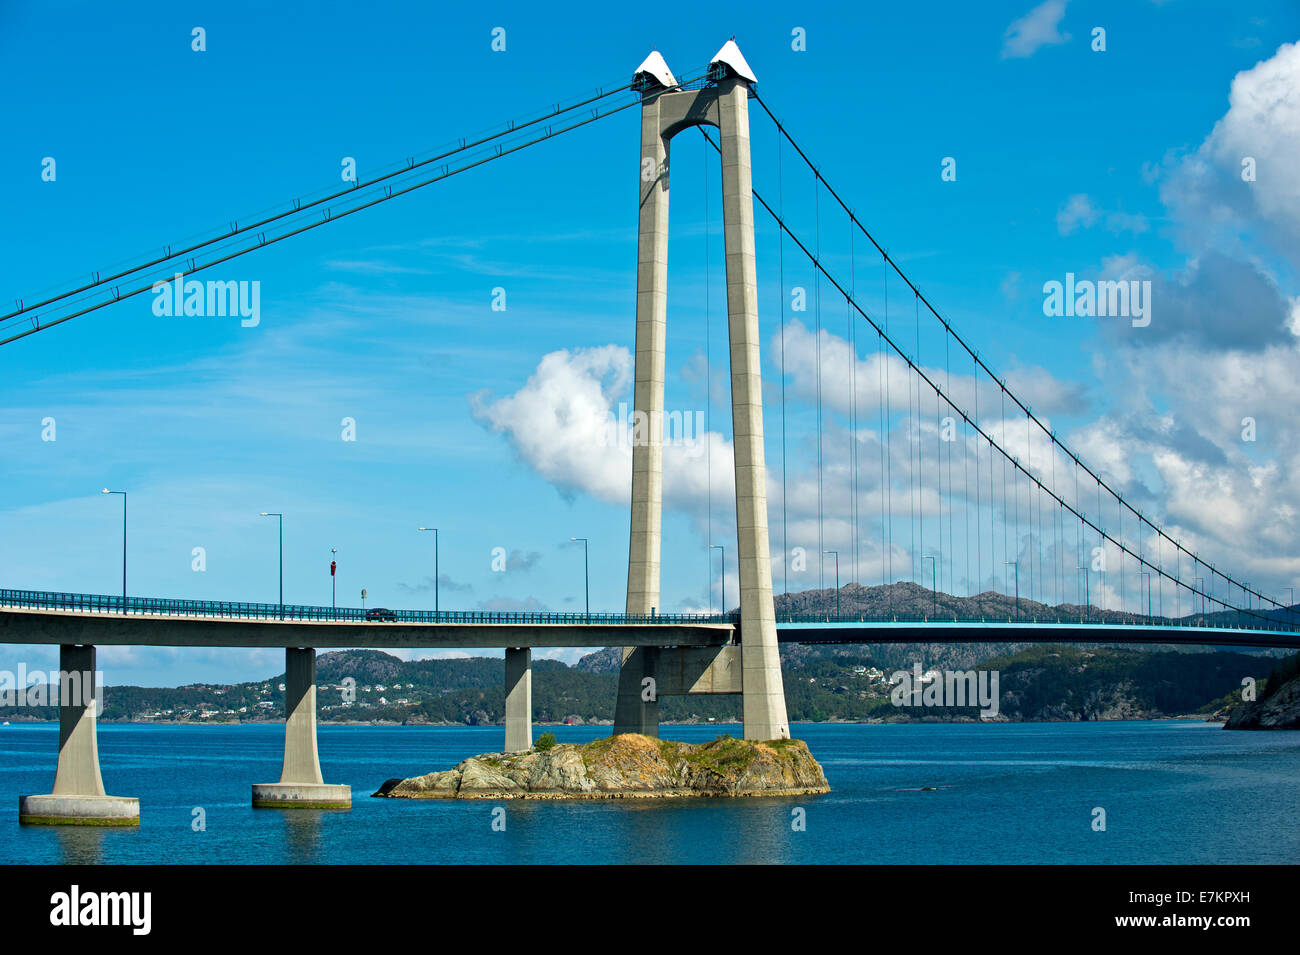 Pylône en béton du pont suspendu Pont Stord ou Stordabrua Digernessundet, de l'autre côté de la La Spezia, Norvège Banque D'Images